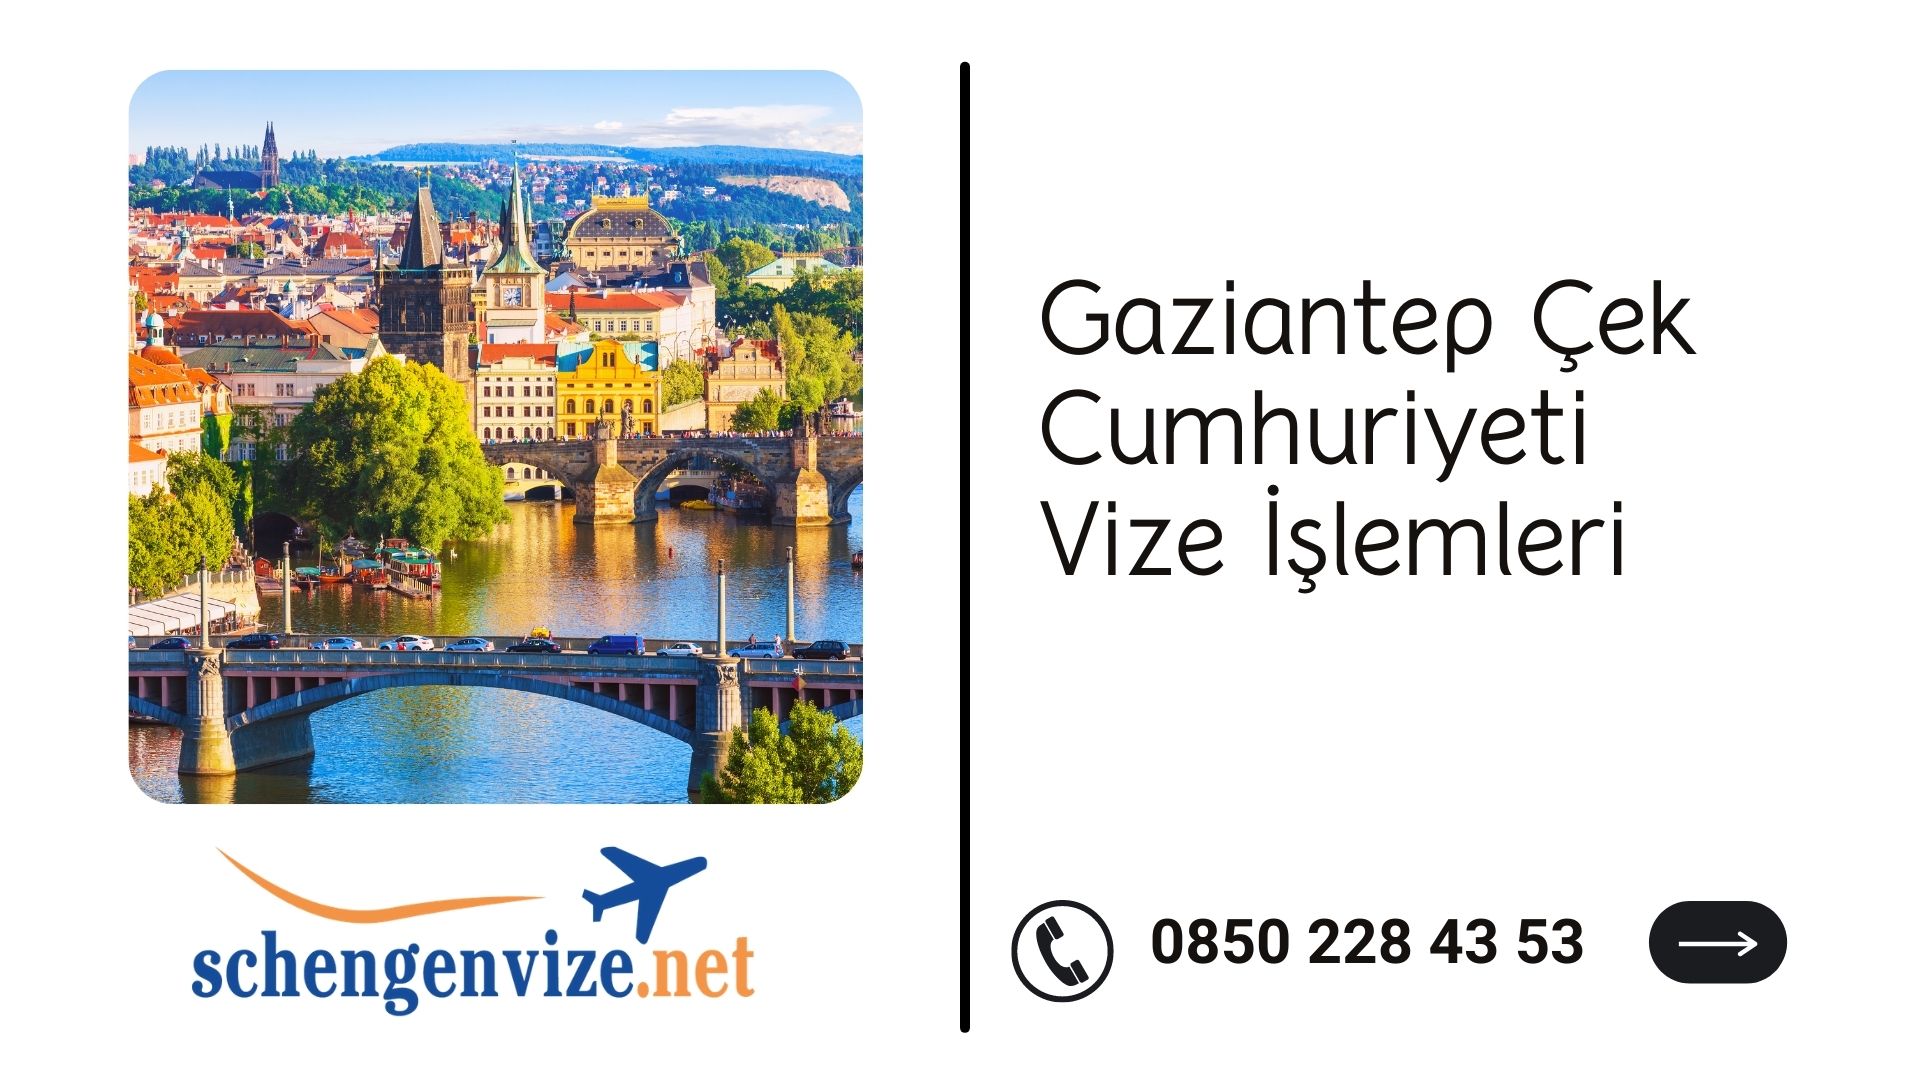 Gaziantep Çek Cumhuriyeti Vize İşlemleri